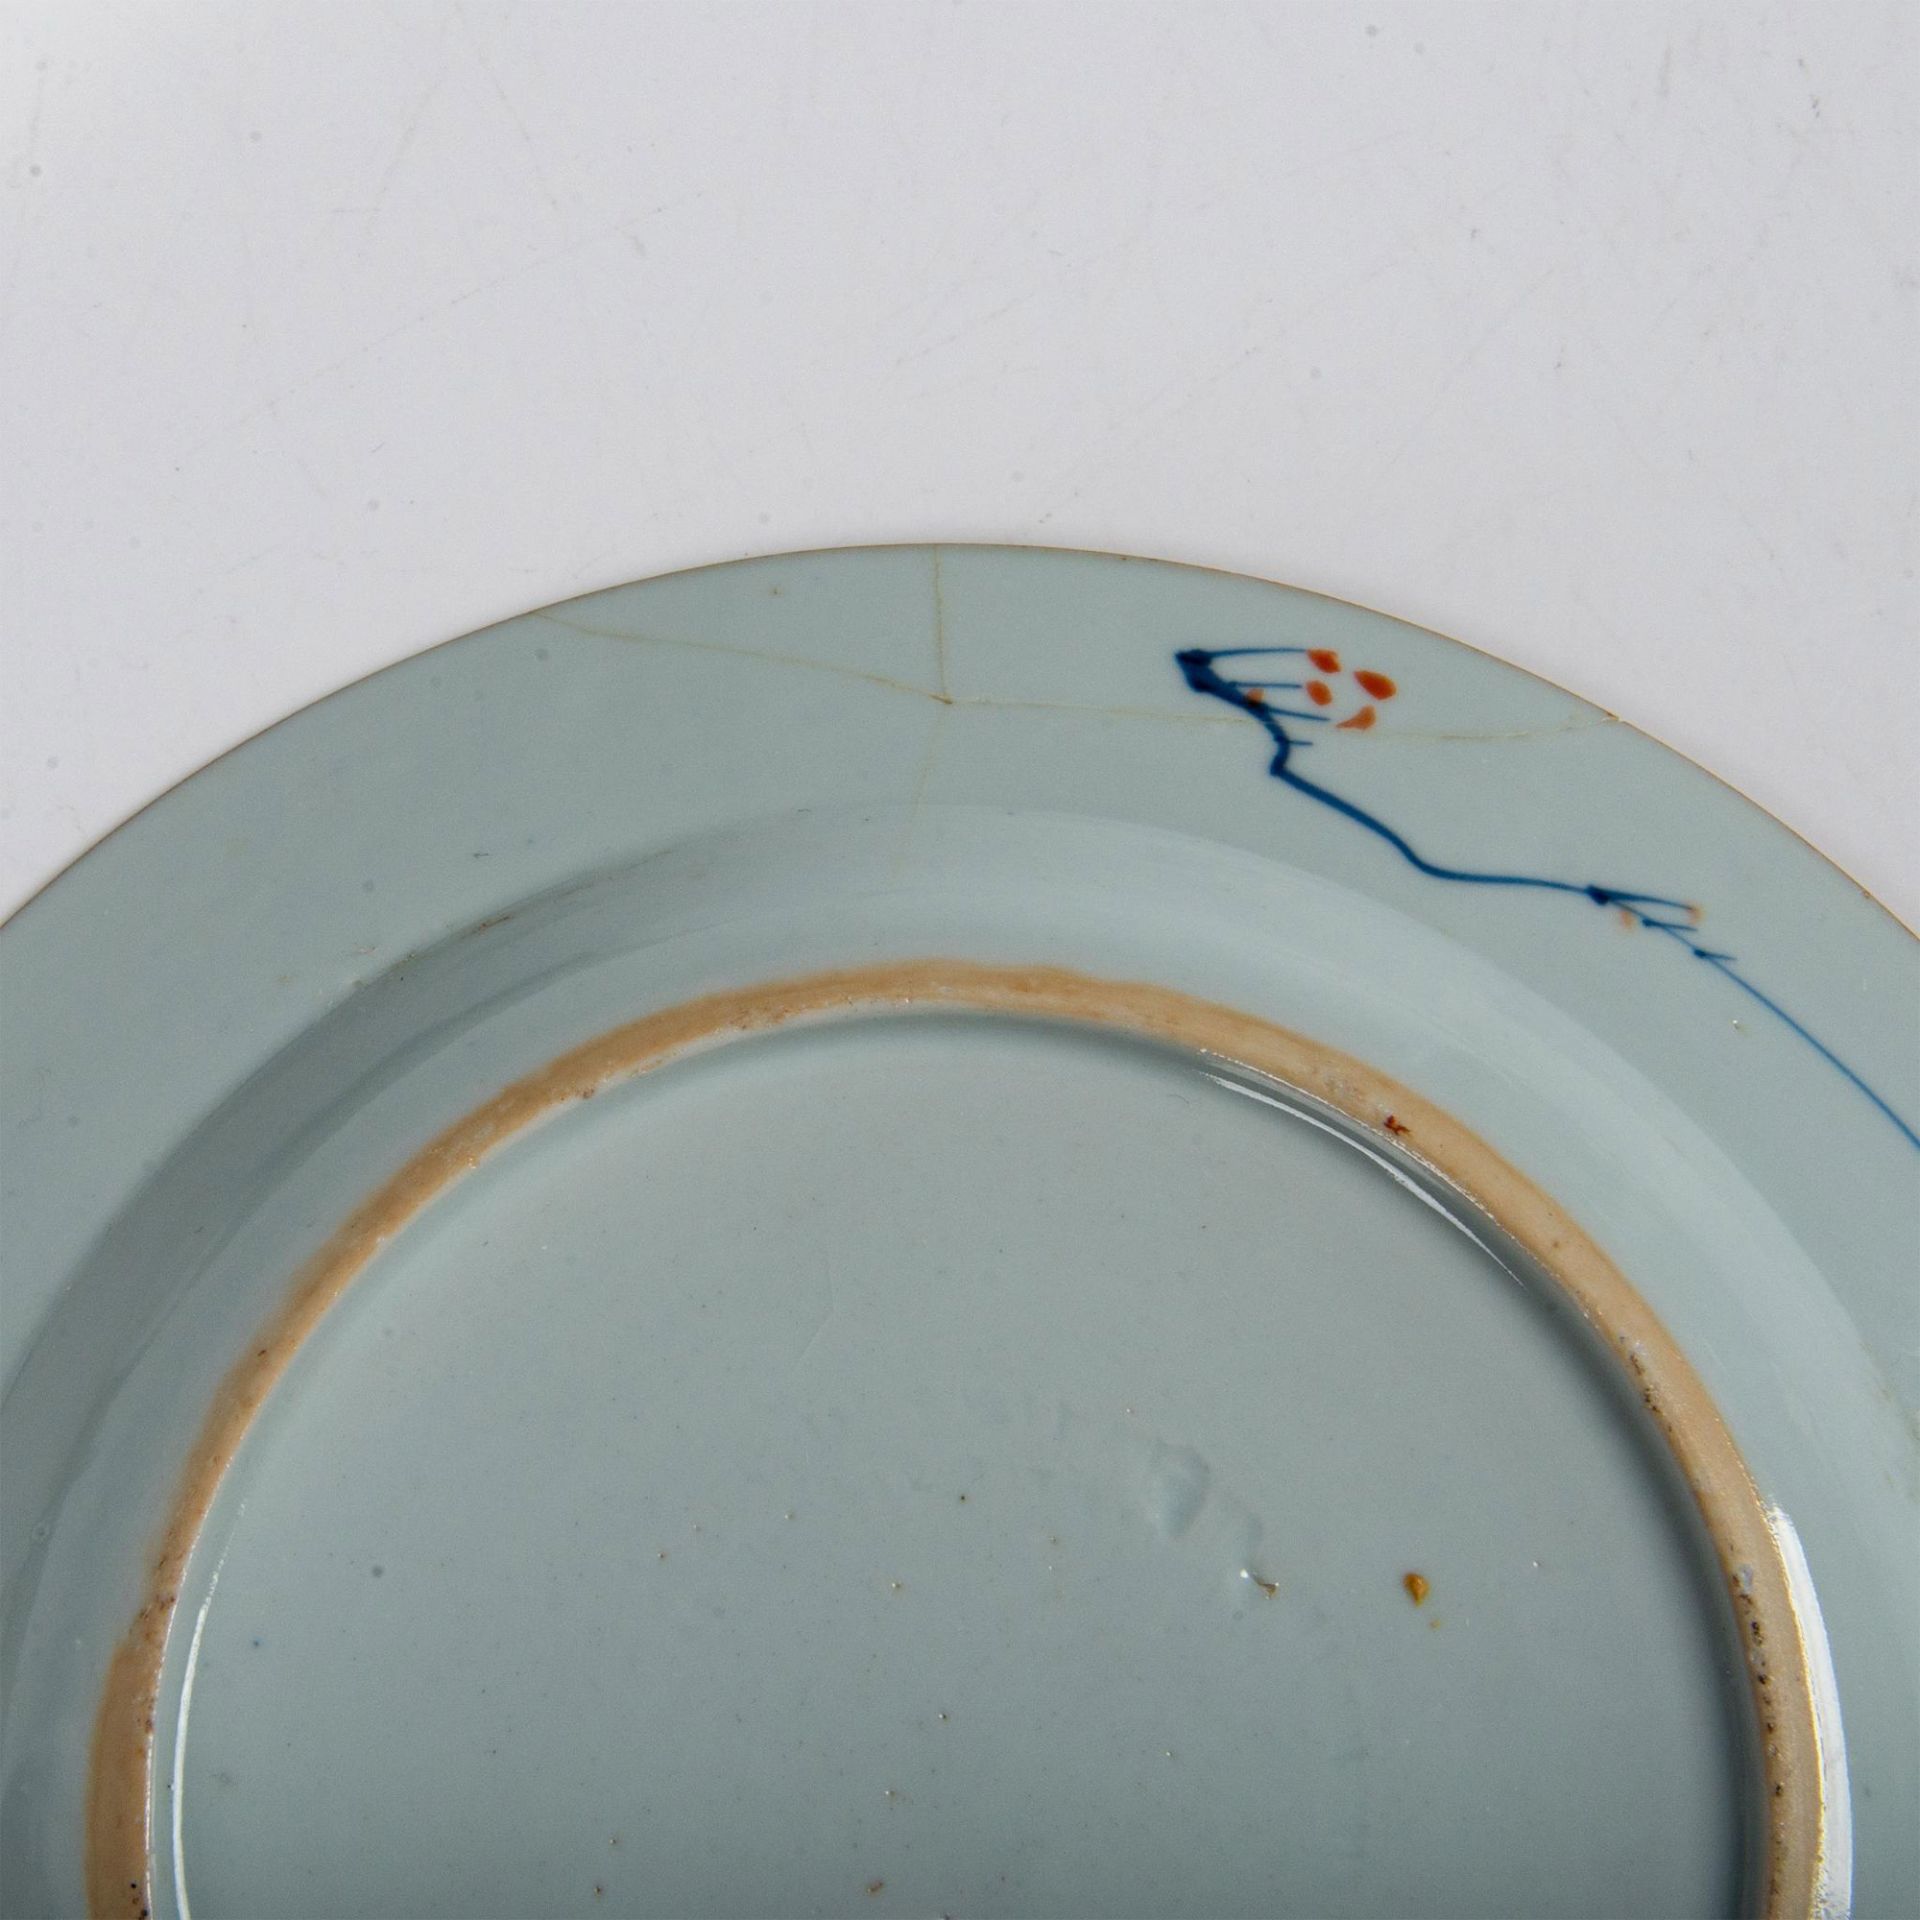 6pc Chinese Imari Porcelain Salad Plates - Image 4 of 5